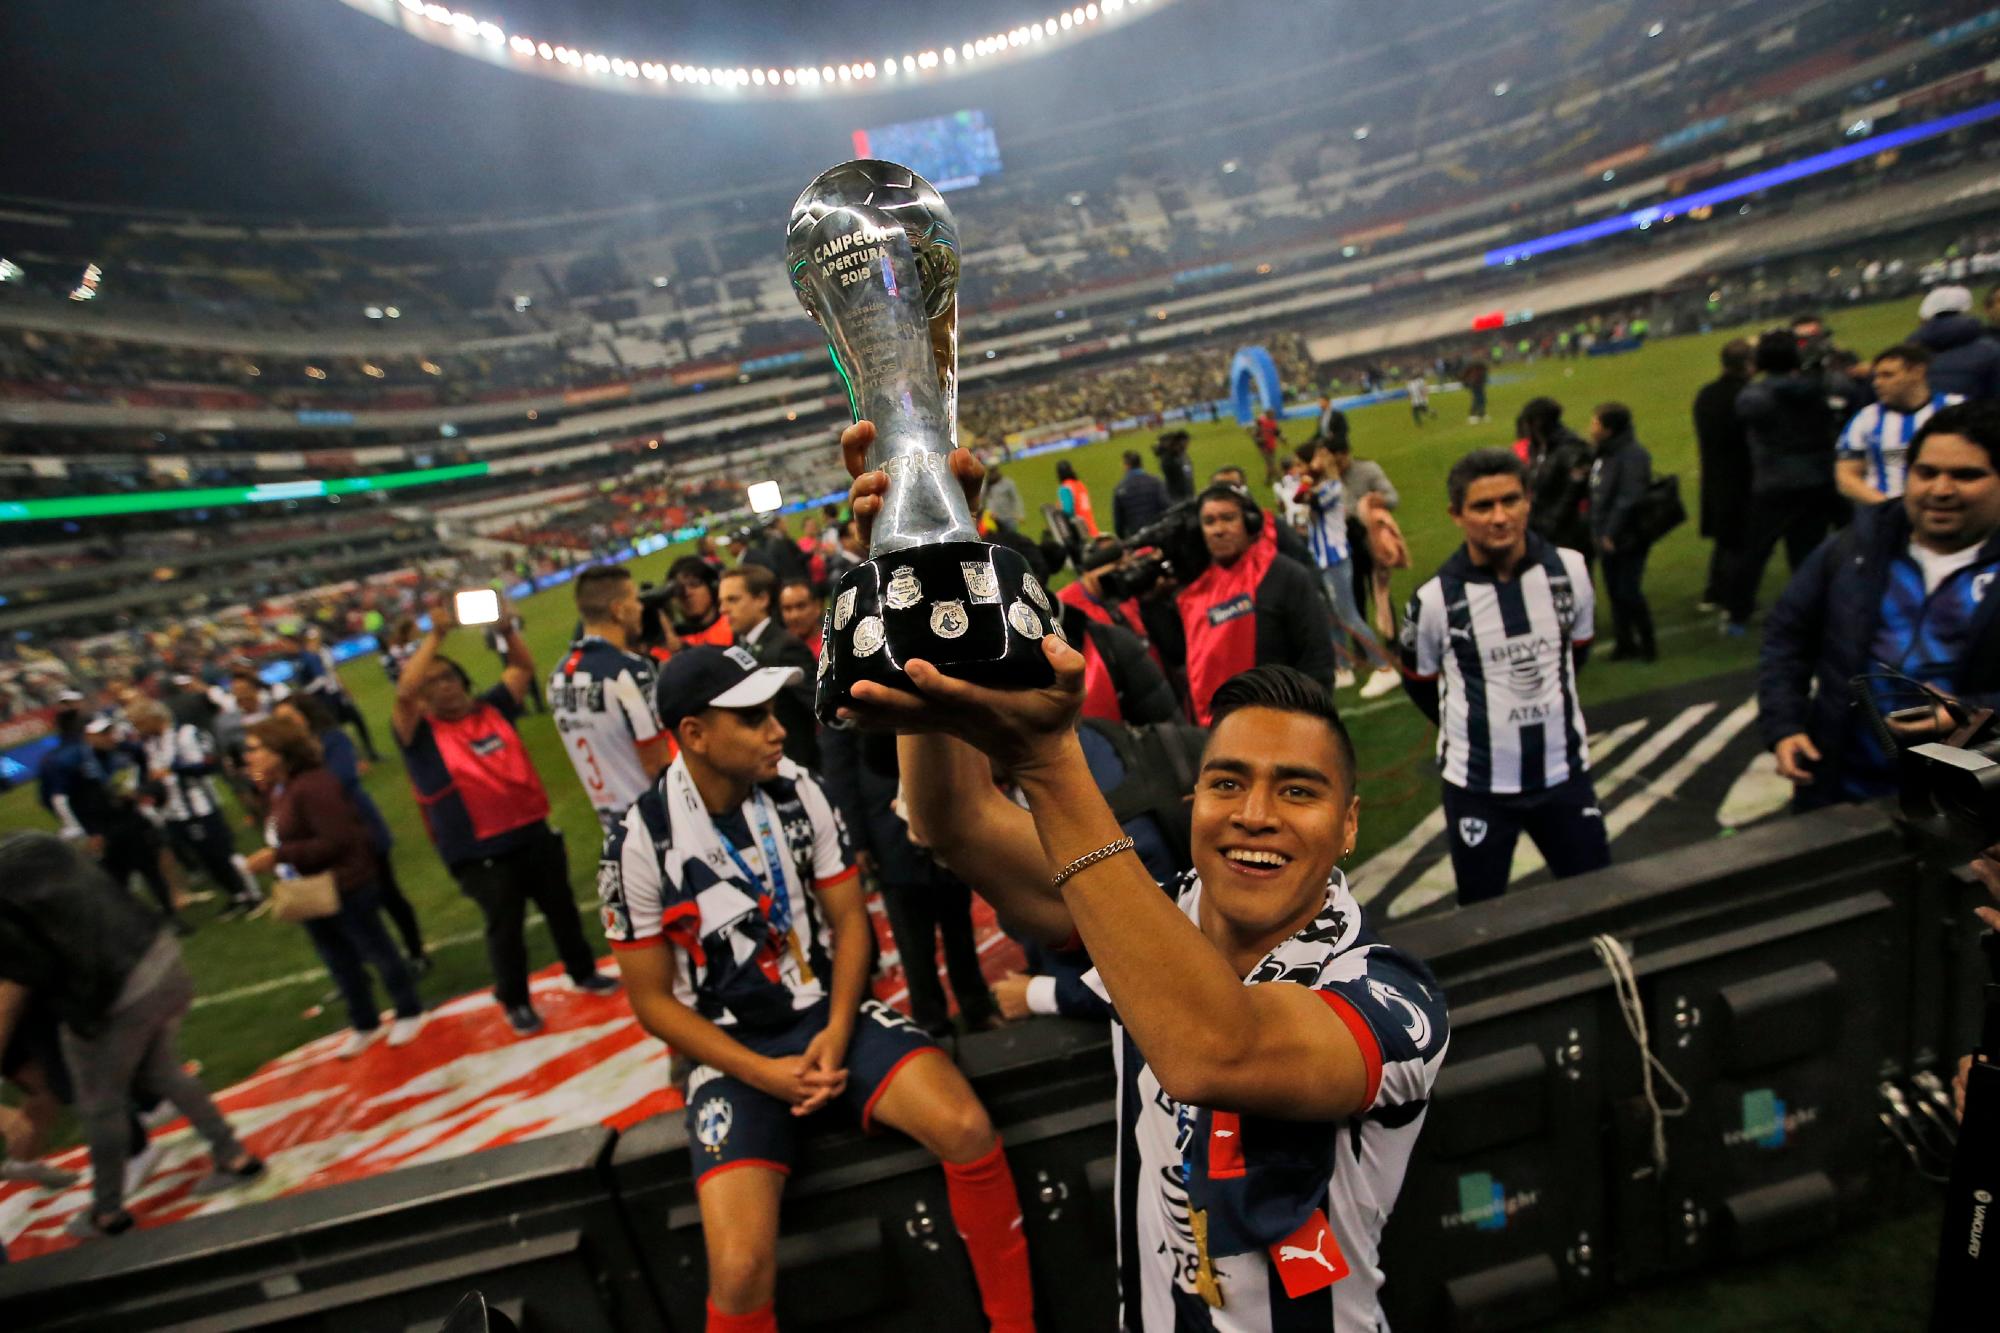 En esta imagen, tomada el 29 de diciembre de 2019, un futbolista del Monterrey sostiene el trofeo de campeón de la liga mexicana tras derrotar al América 4-2 en la tanda de penales, en el Estadio Azteca, en la Ciudad de México. (AP Foto/Eduardo Verdugo)